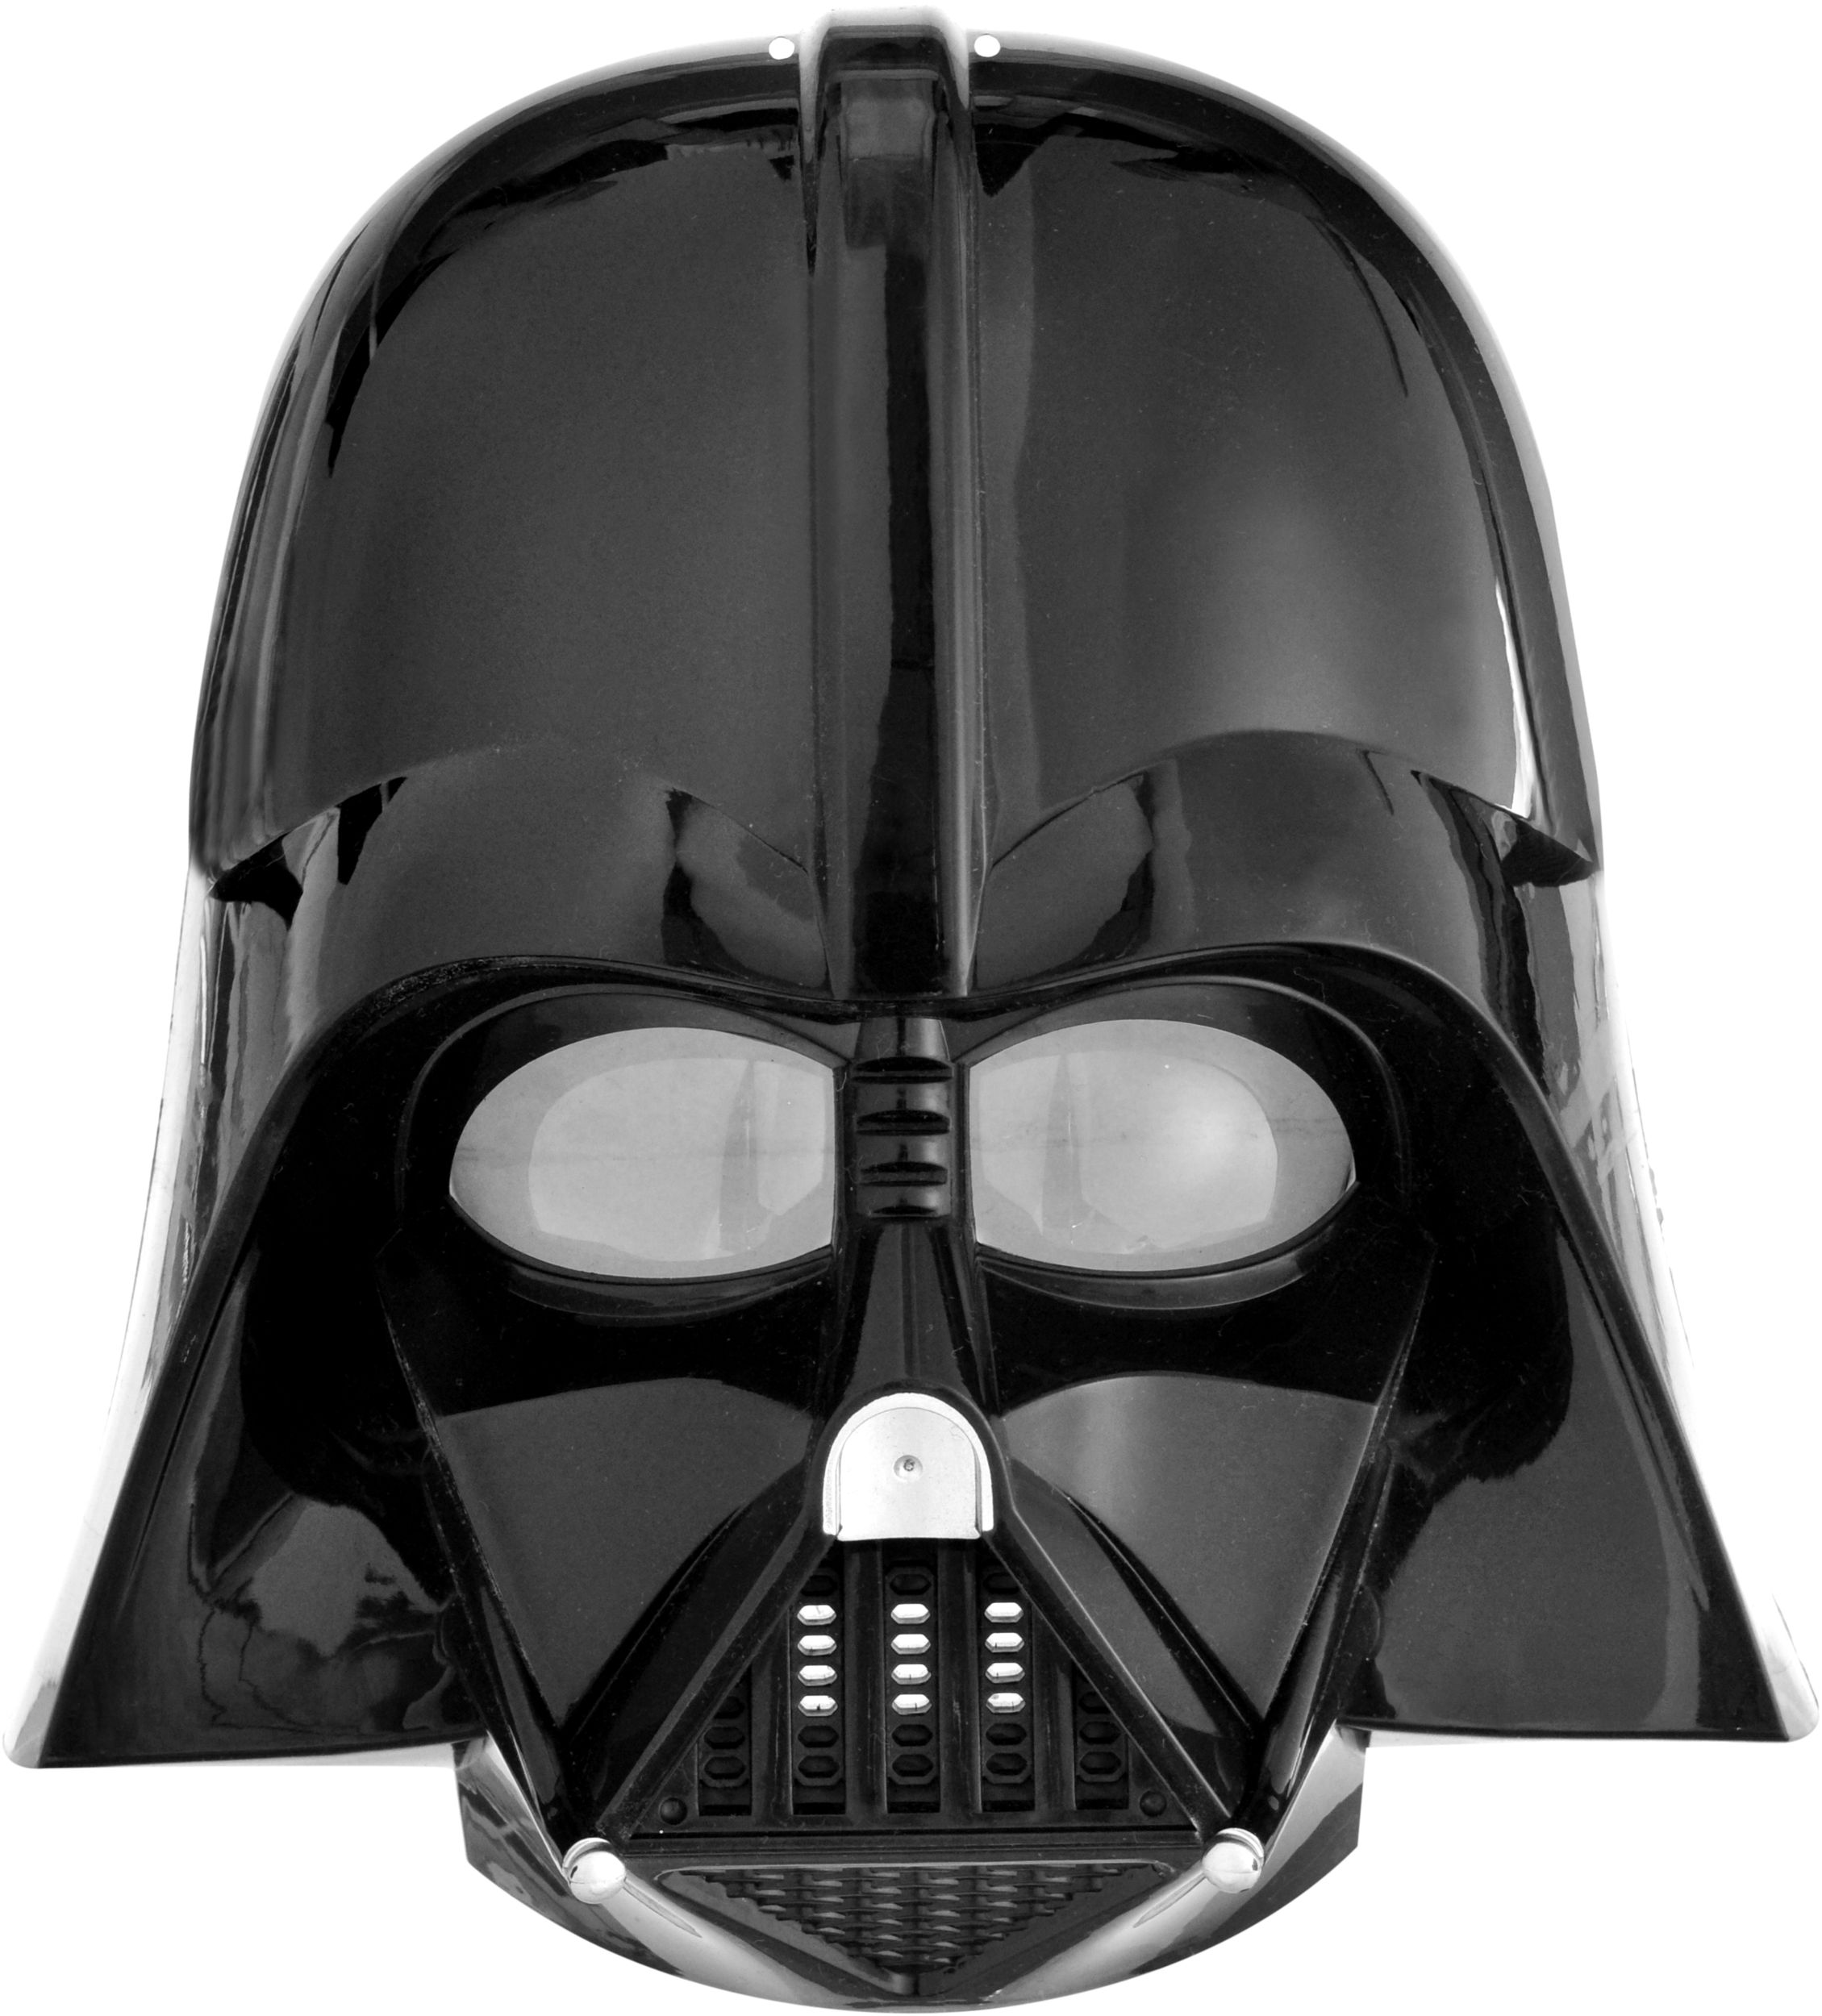 Masque en plastique Darth Vader de Disney Star Wars, noir, taille unique,  accessoire de costume à porter pour l'Halloween